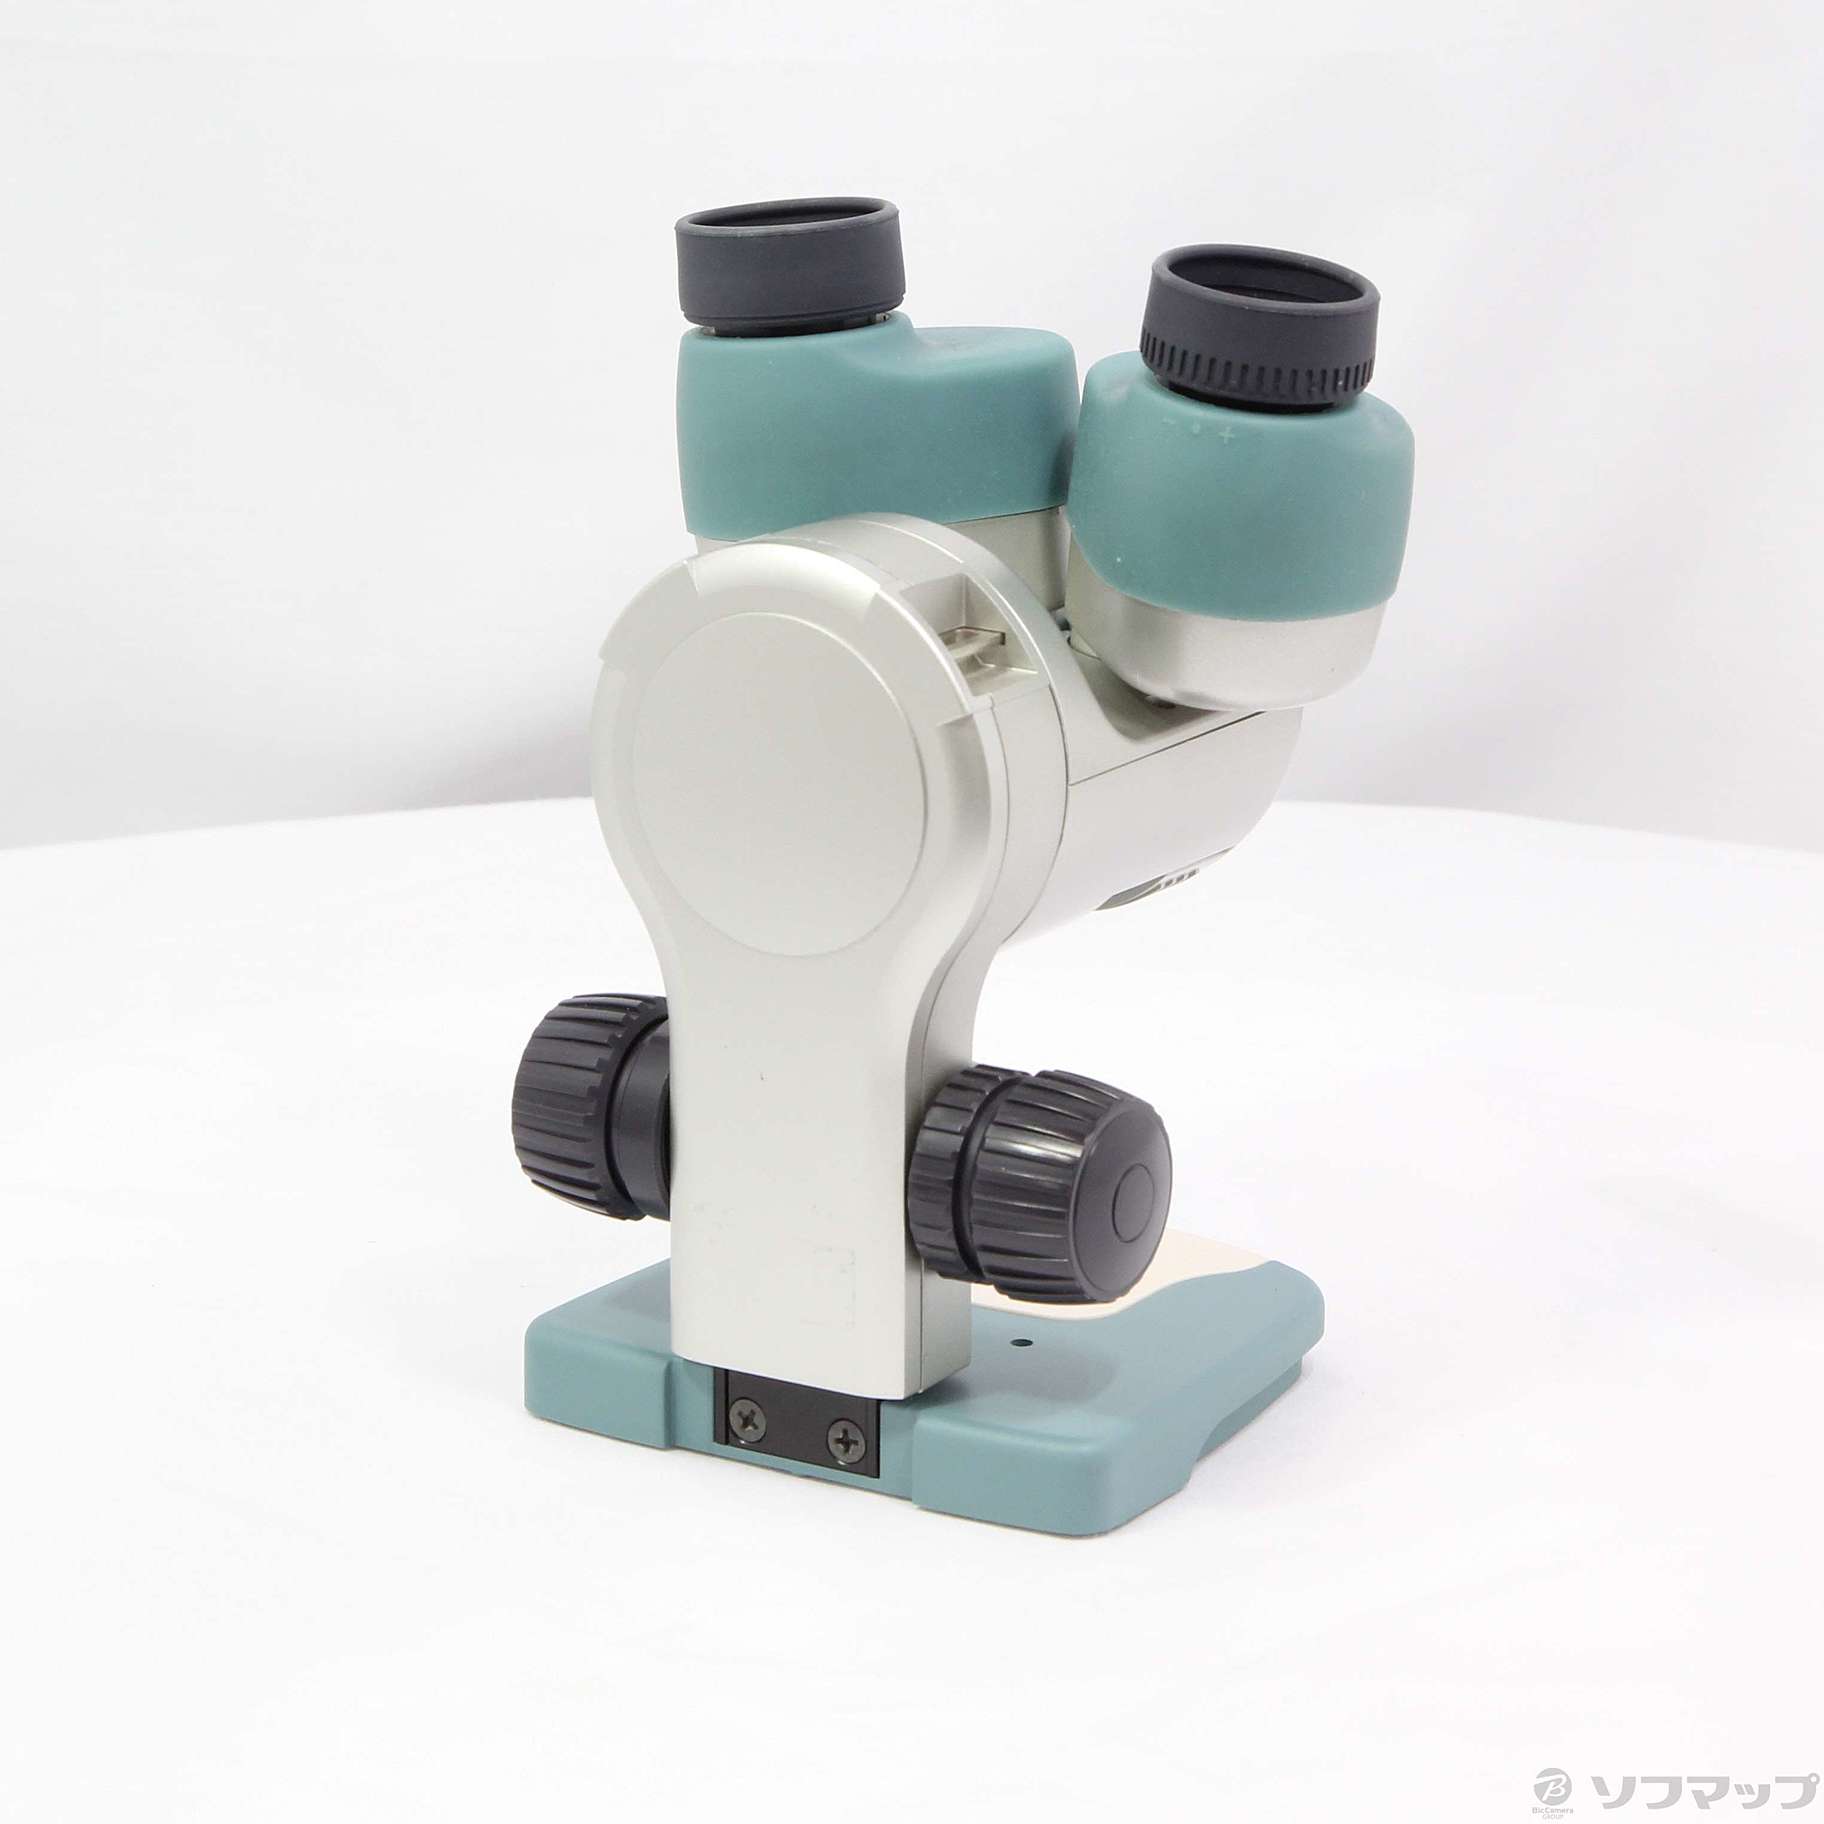 ニコン小型双眼実体顕微鏡ファーブルミニ - 道具、工具